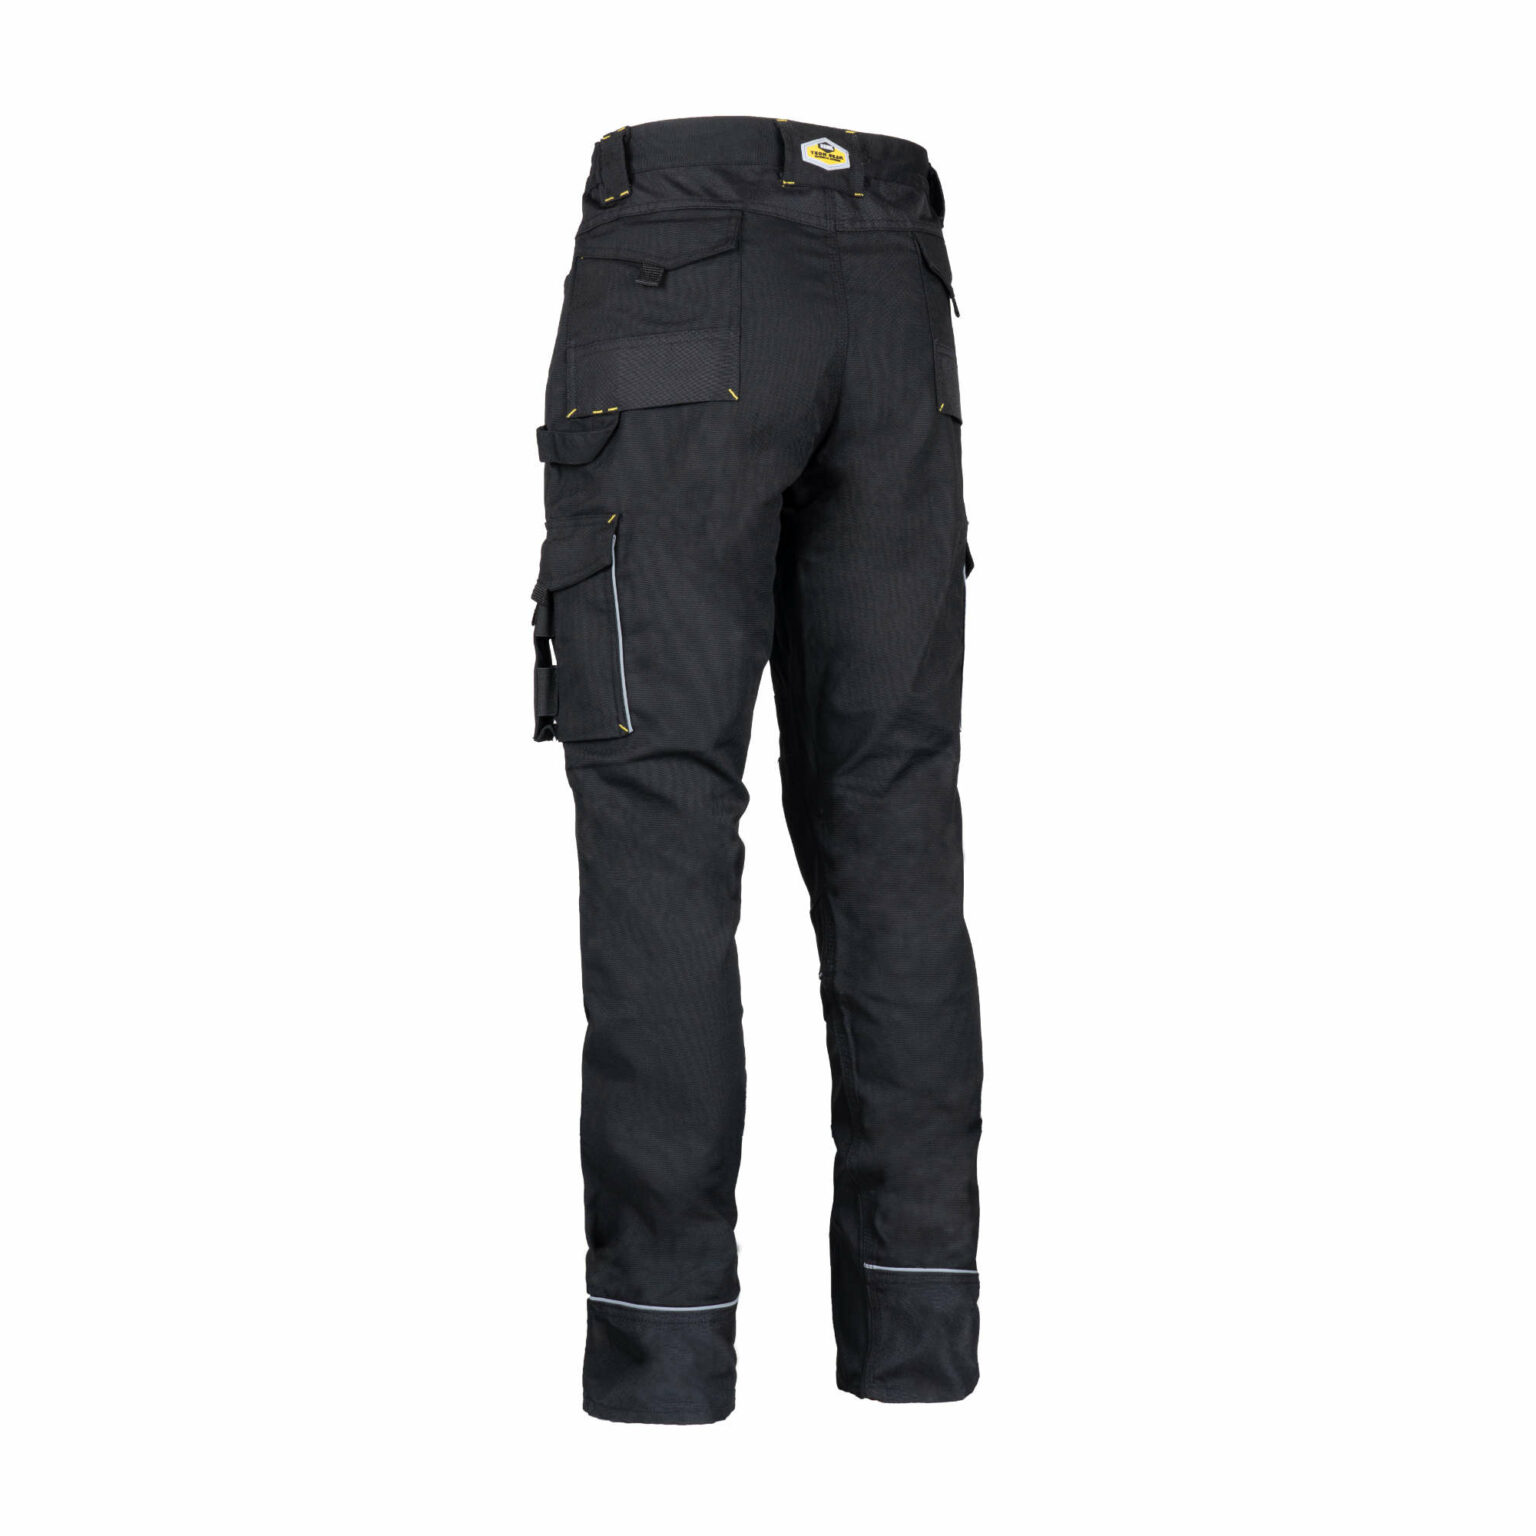 REBEL Men's Tech Gear Trousers Raven Black - REBEL Safety Gear